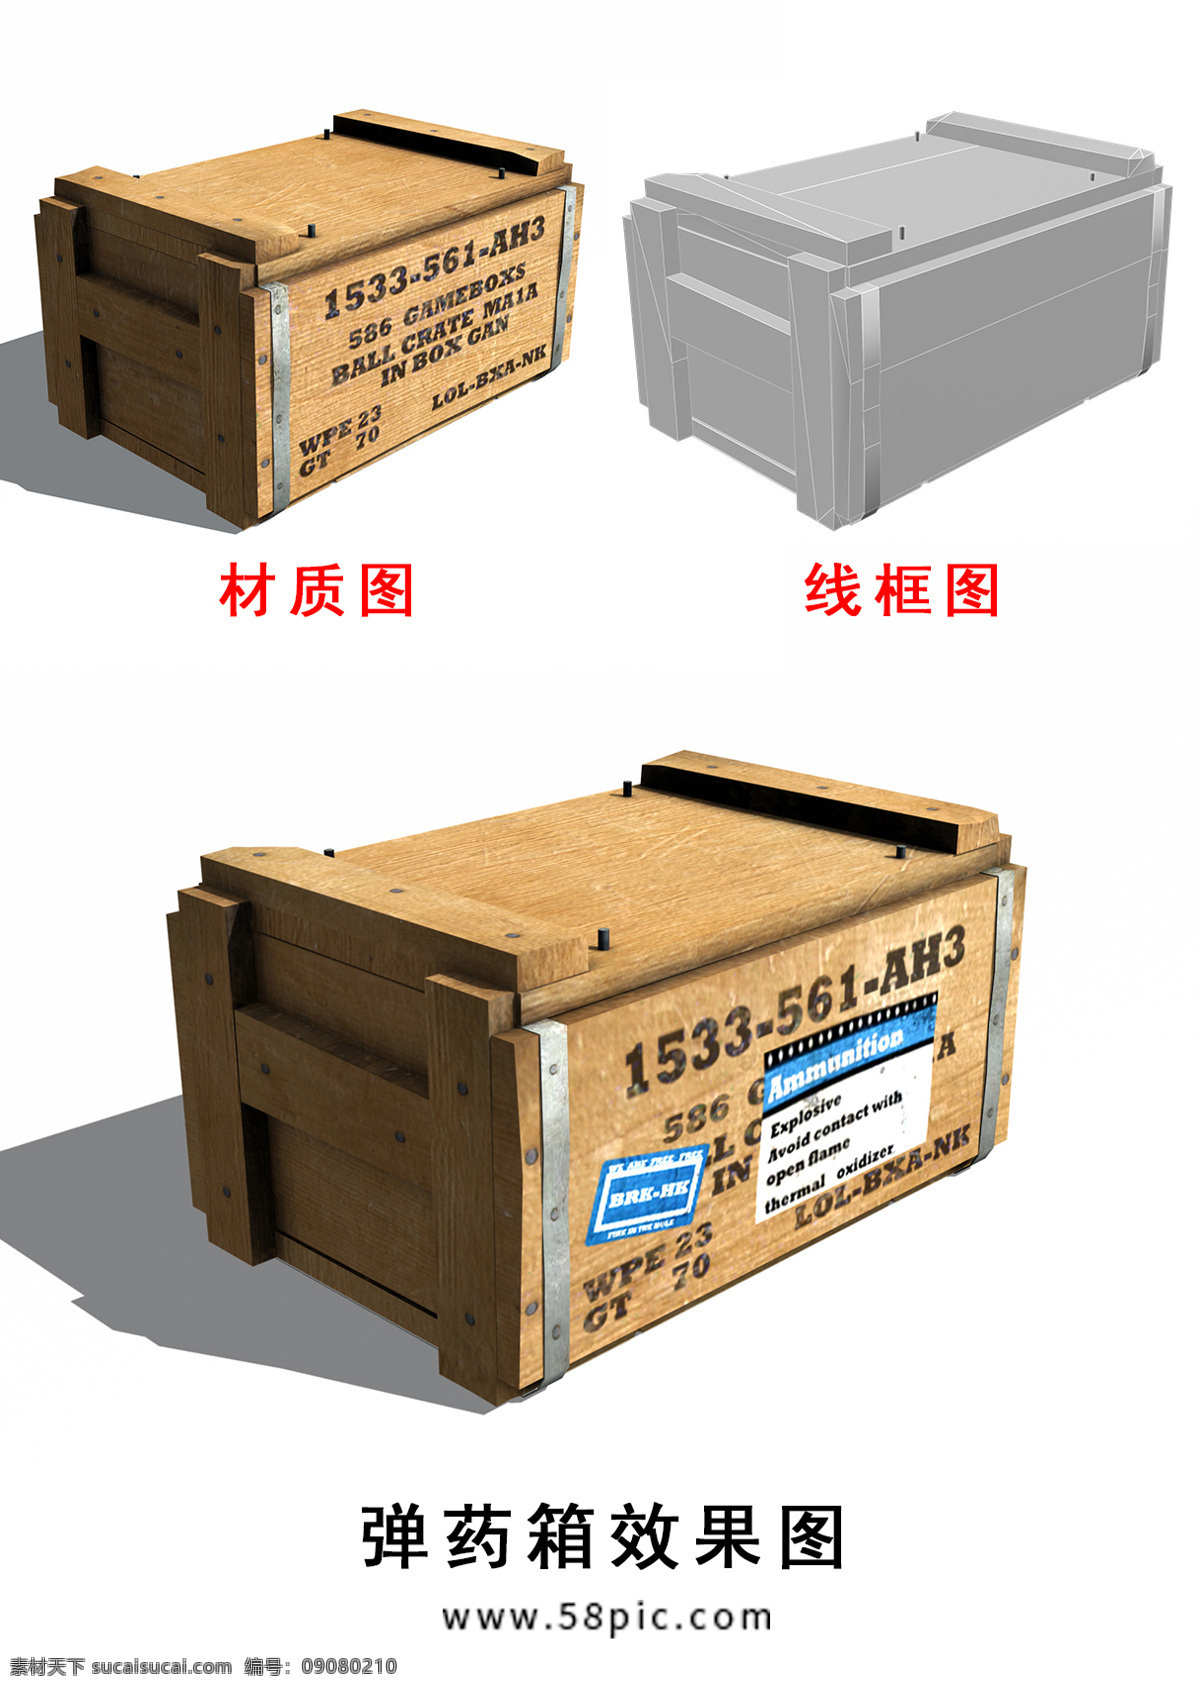 写实 木 材质 弹药箱 木箱 药箱 箱子 3d模型 模型 子弹箱 炸药箱